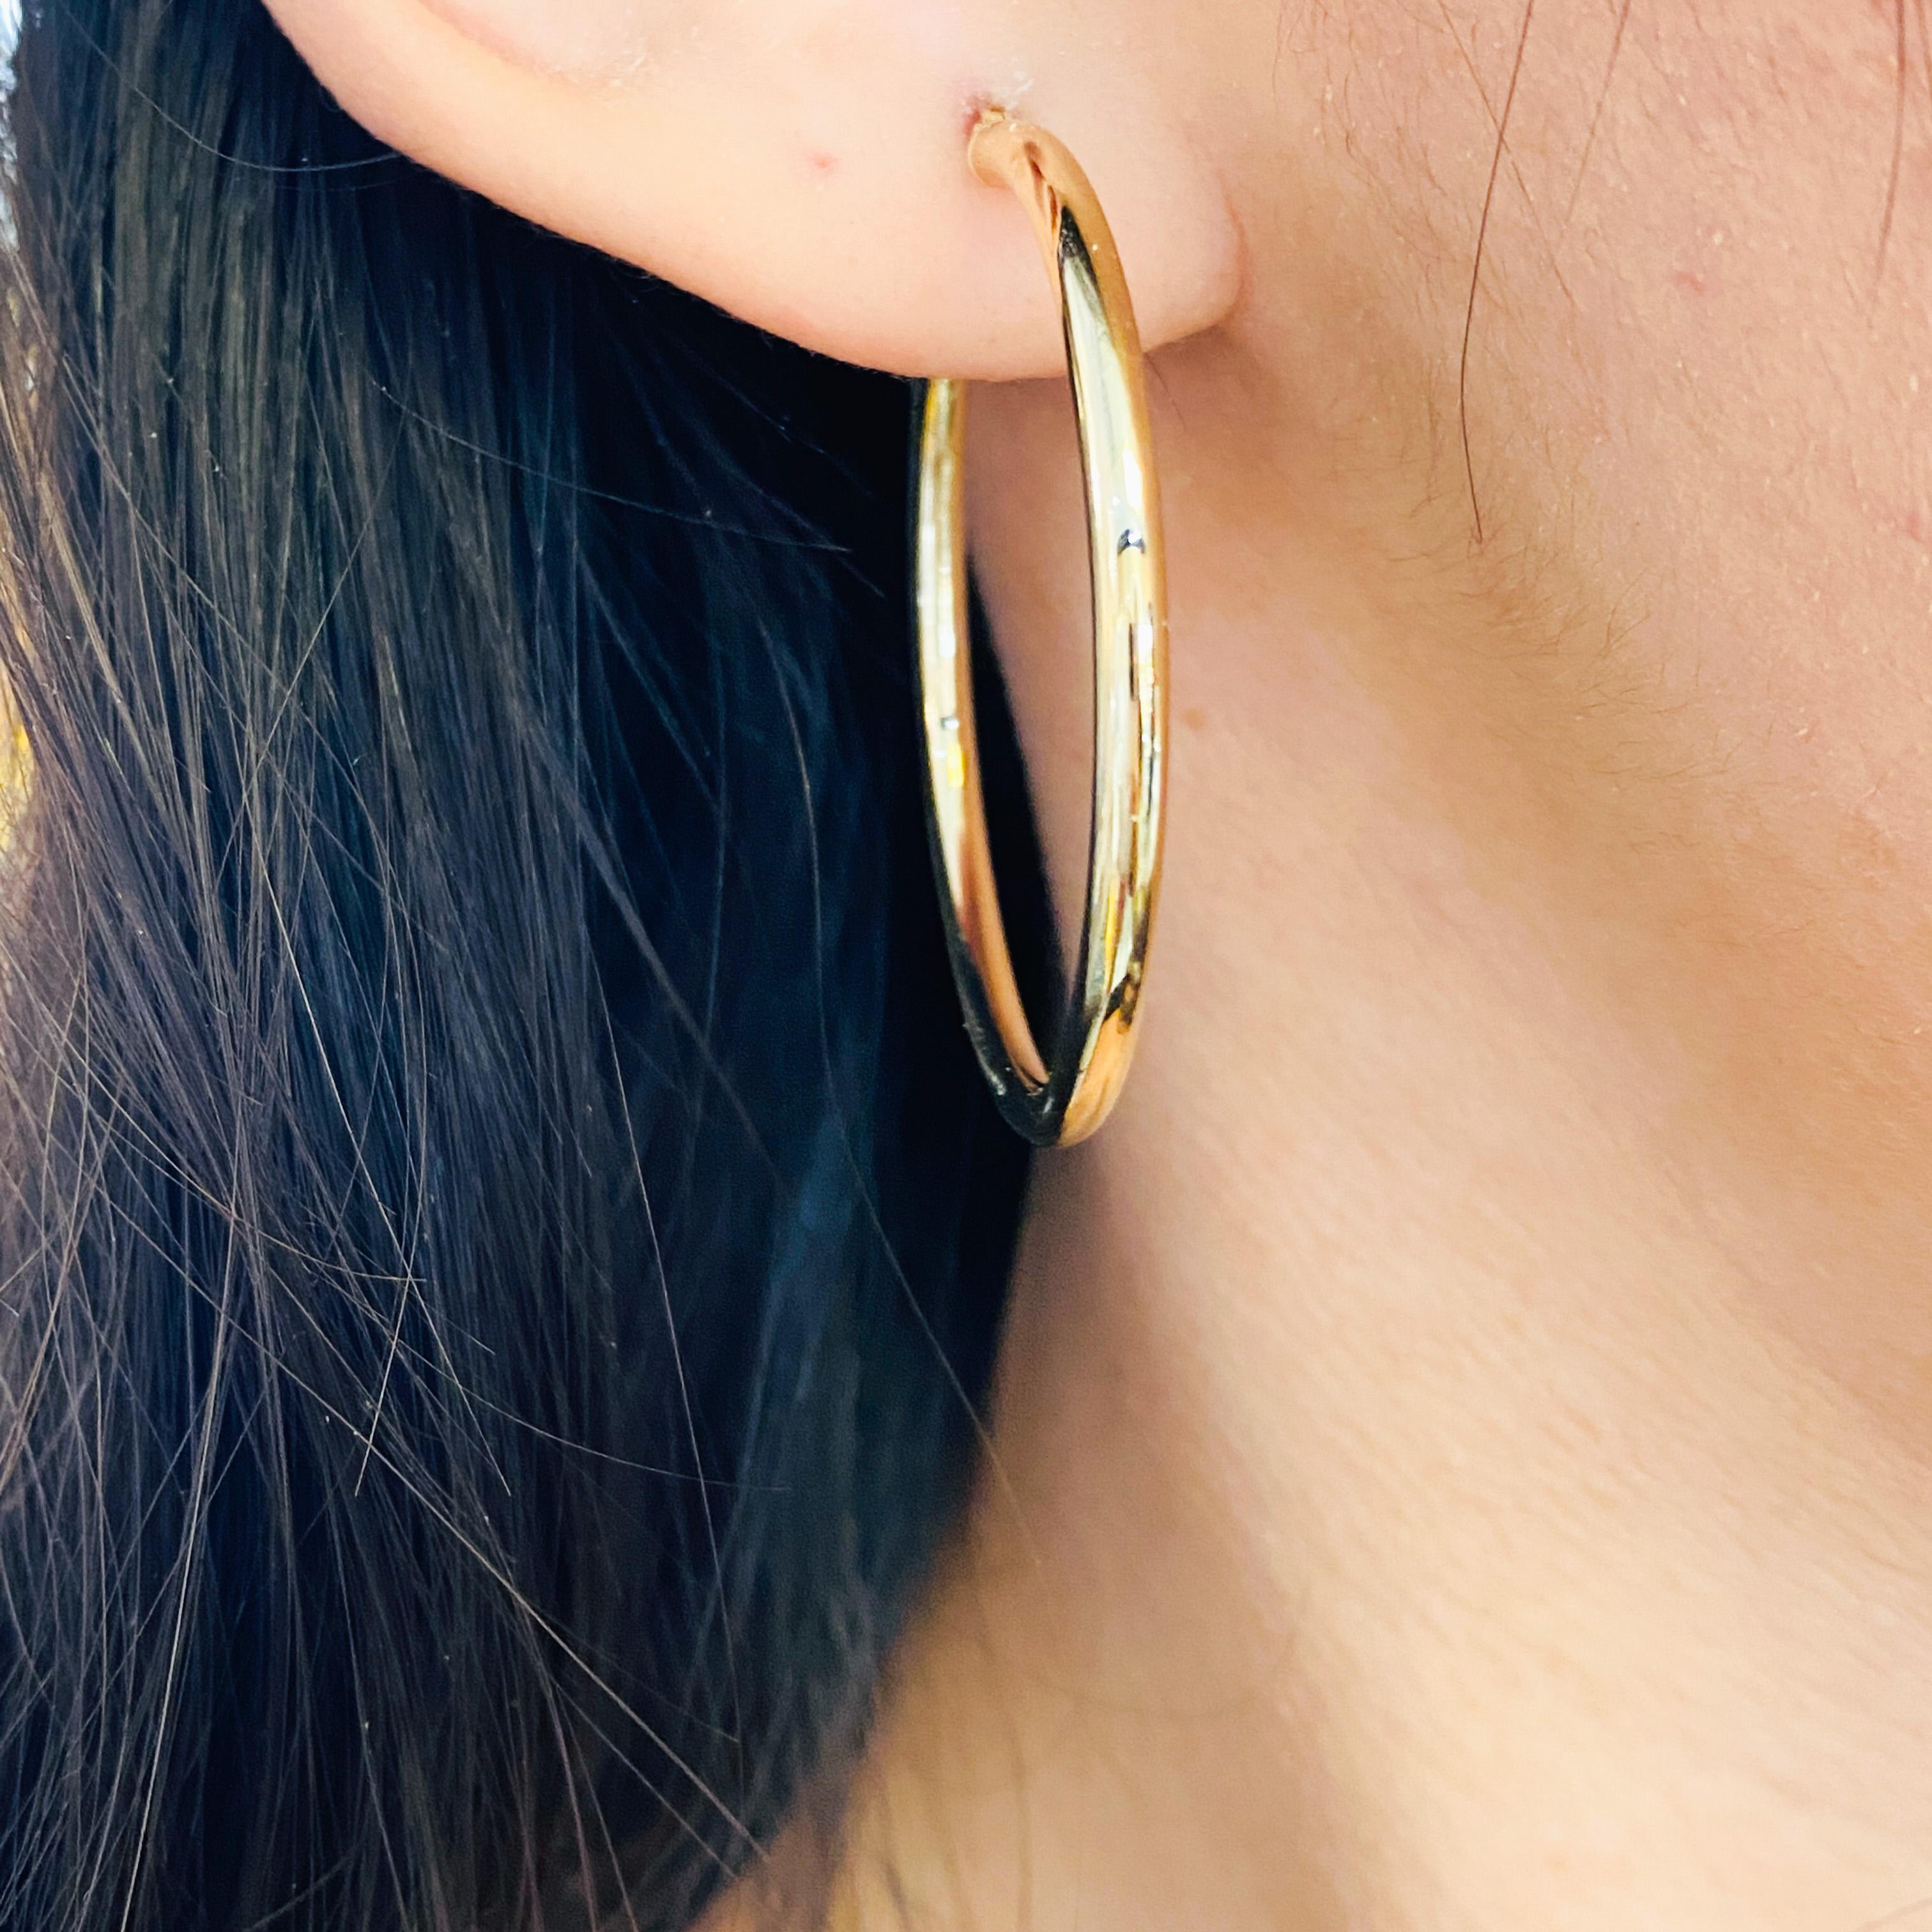 1.5 inch hoop earrings